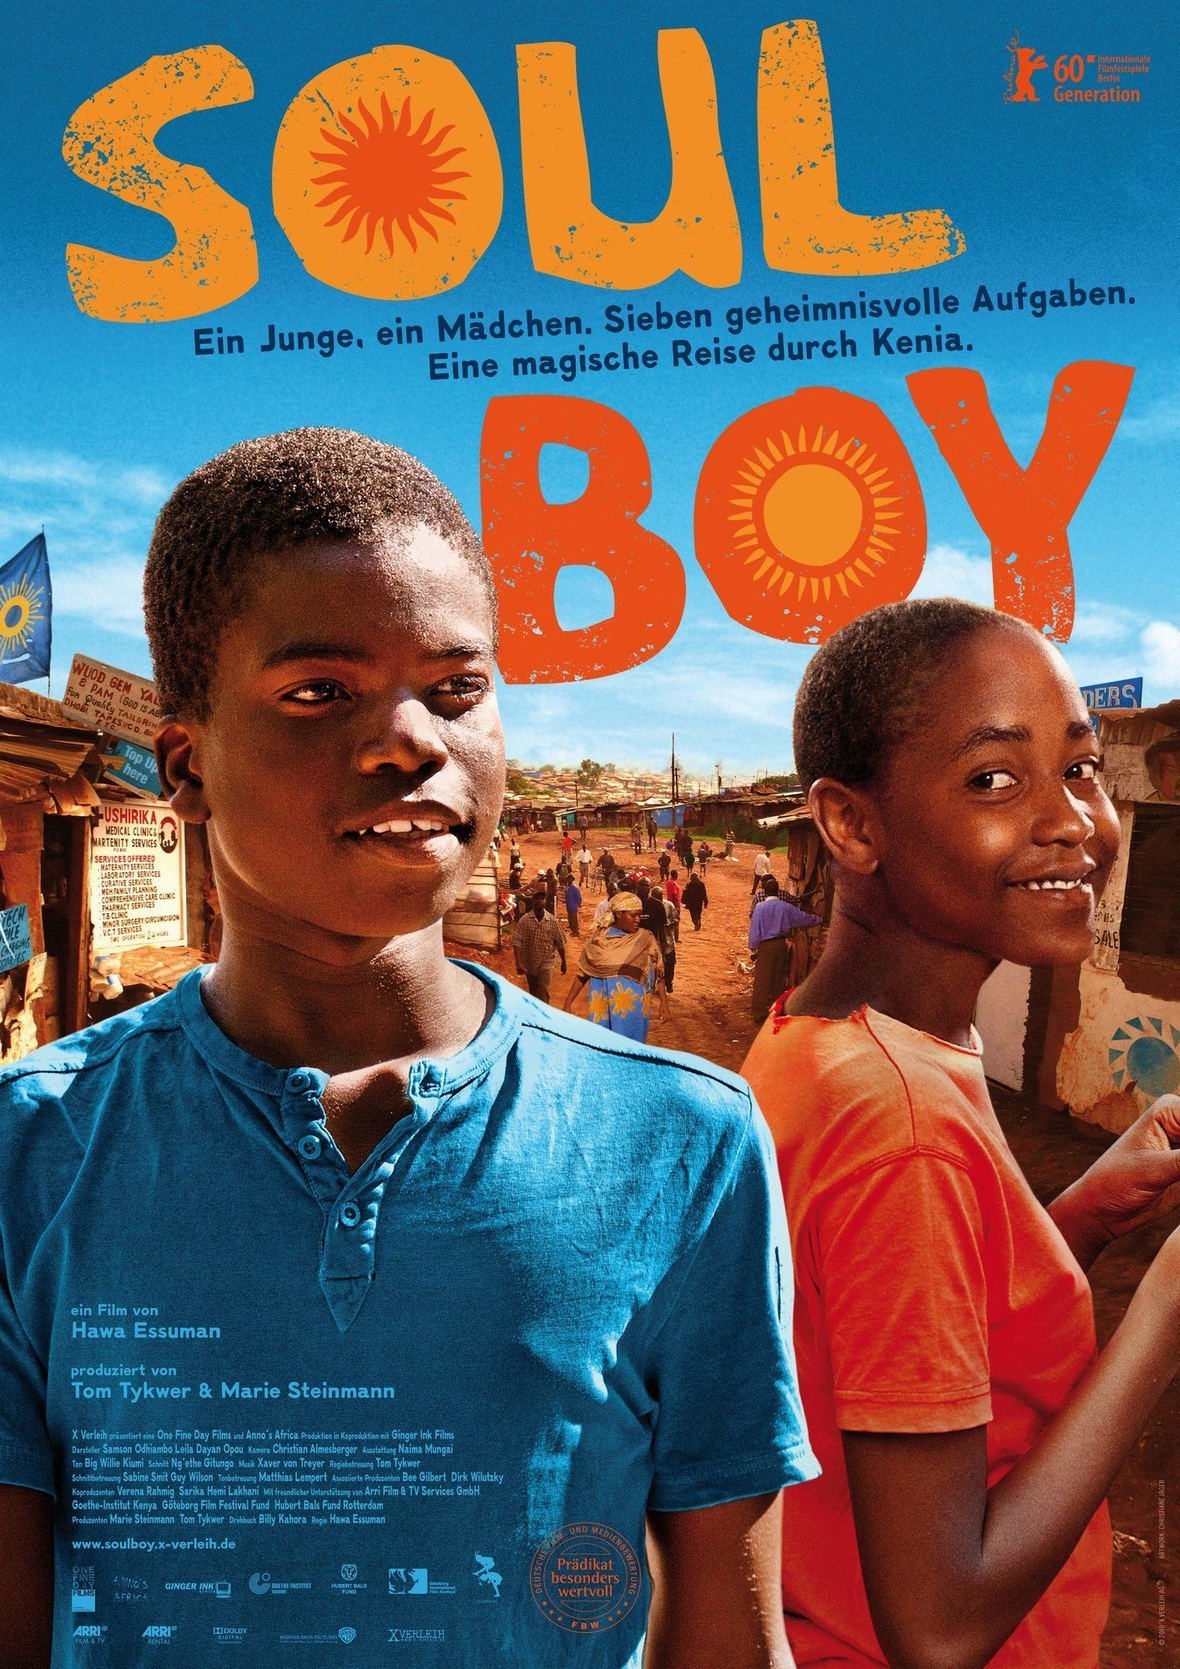 Auf dem bunten Plakat zu dem Film sind die Darsteller Samson Odhiambo (links) und Leila Dayan Opou (rechts) zu sehen. Sie lächeln.